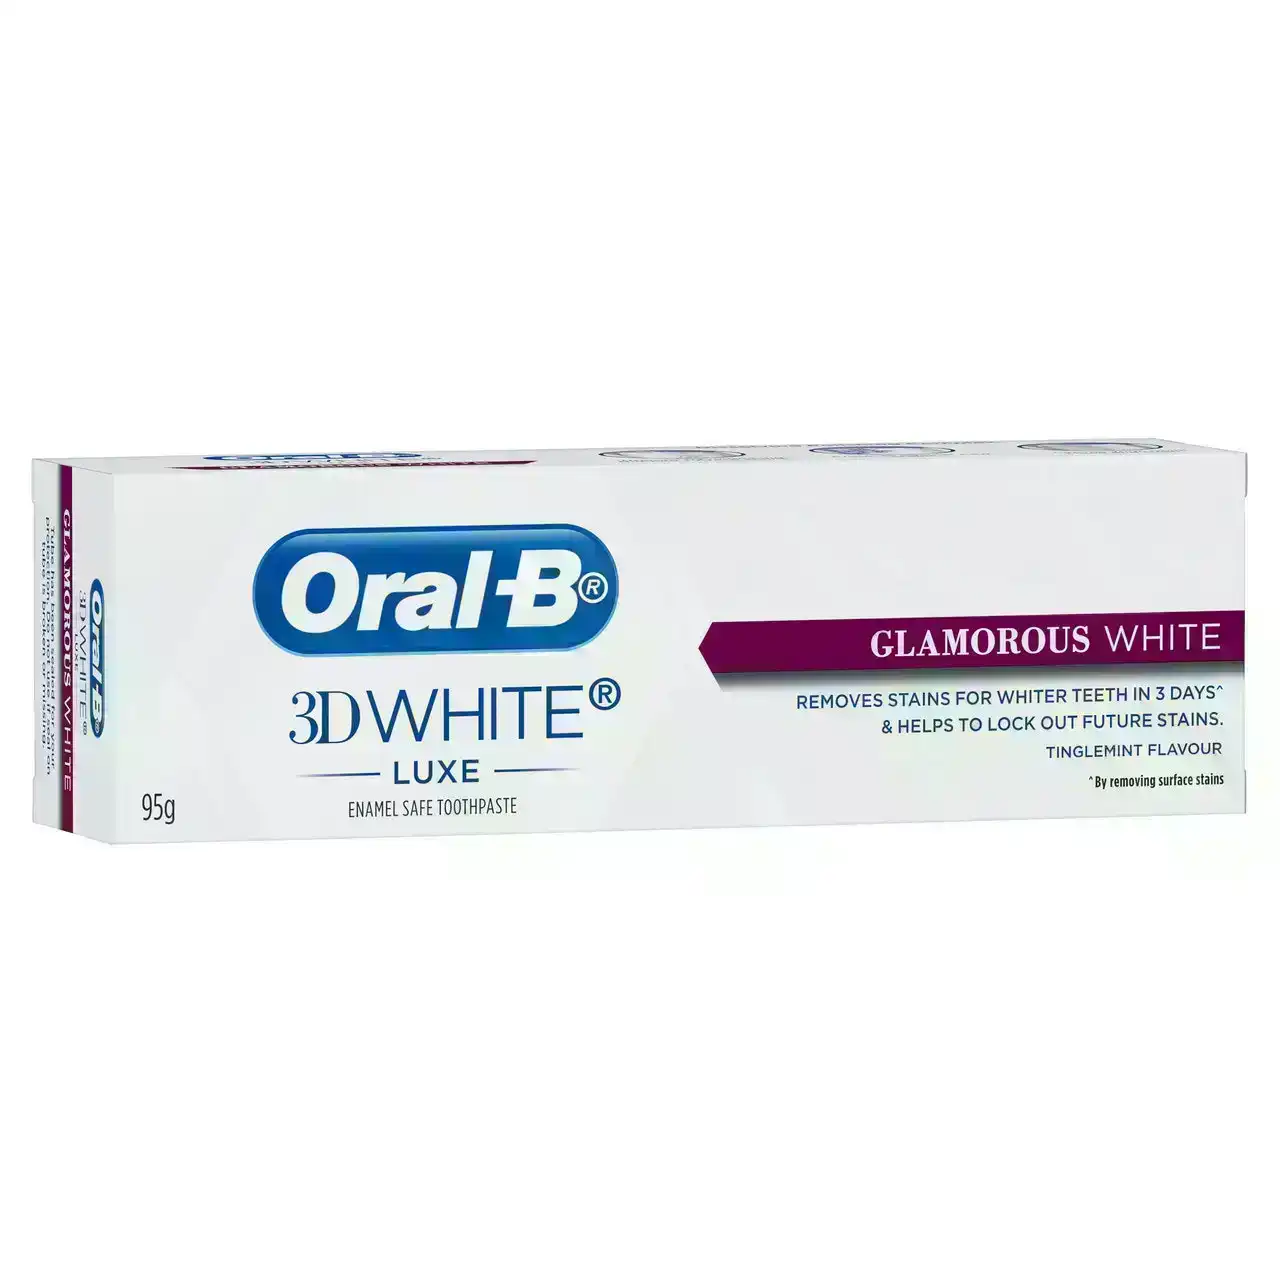 Oral-B 3D White Luxe Glamorous White Whitening Toothpaste, 95g